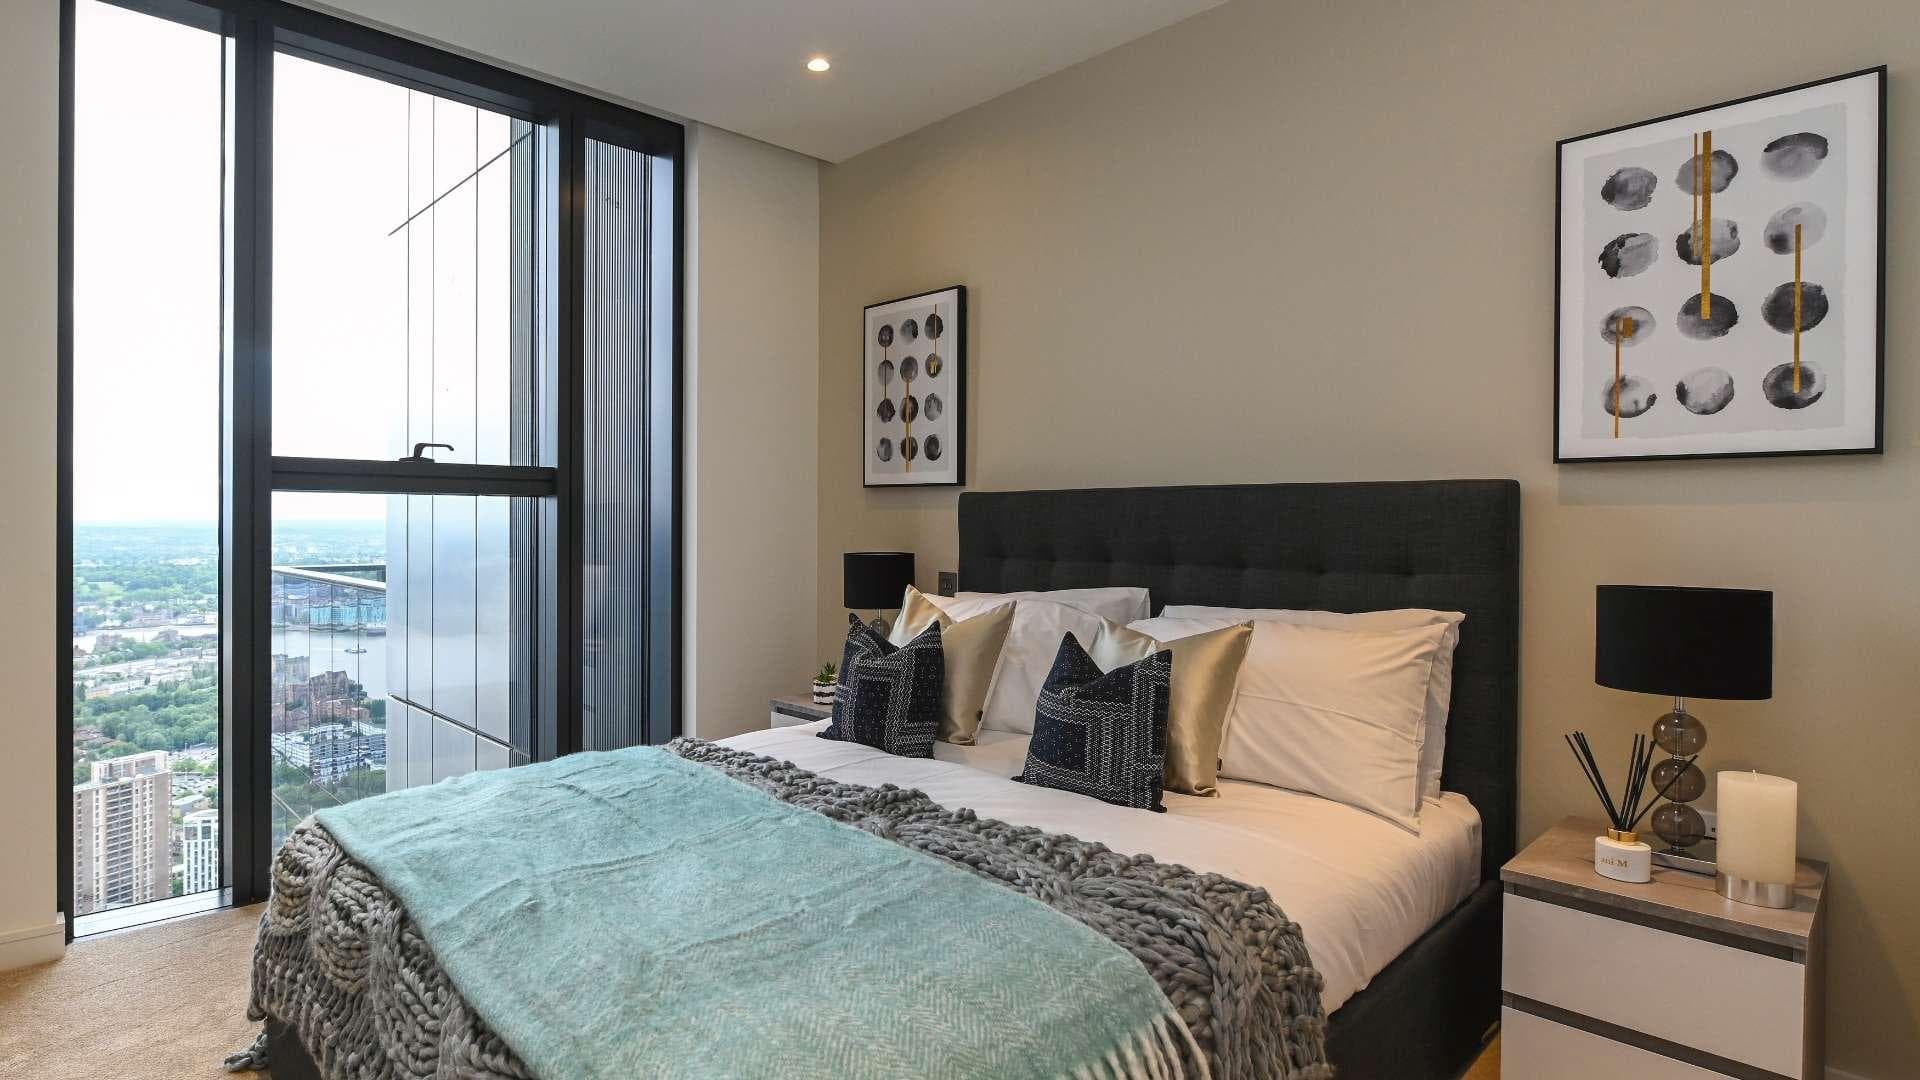 3 Bedroom Apartment For Sale Canary Wharf Lp17830 208f3fcea4b3d600.jpg